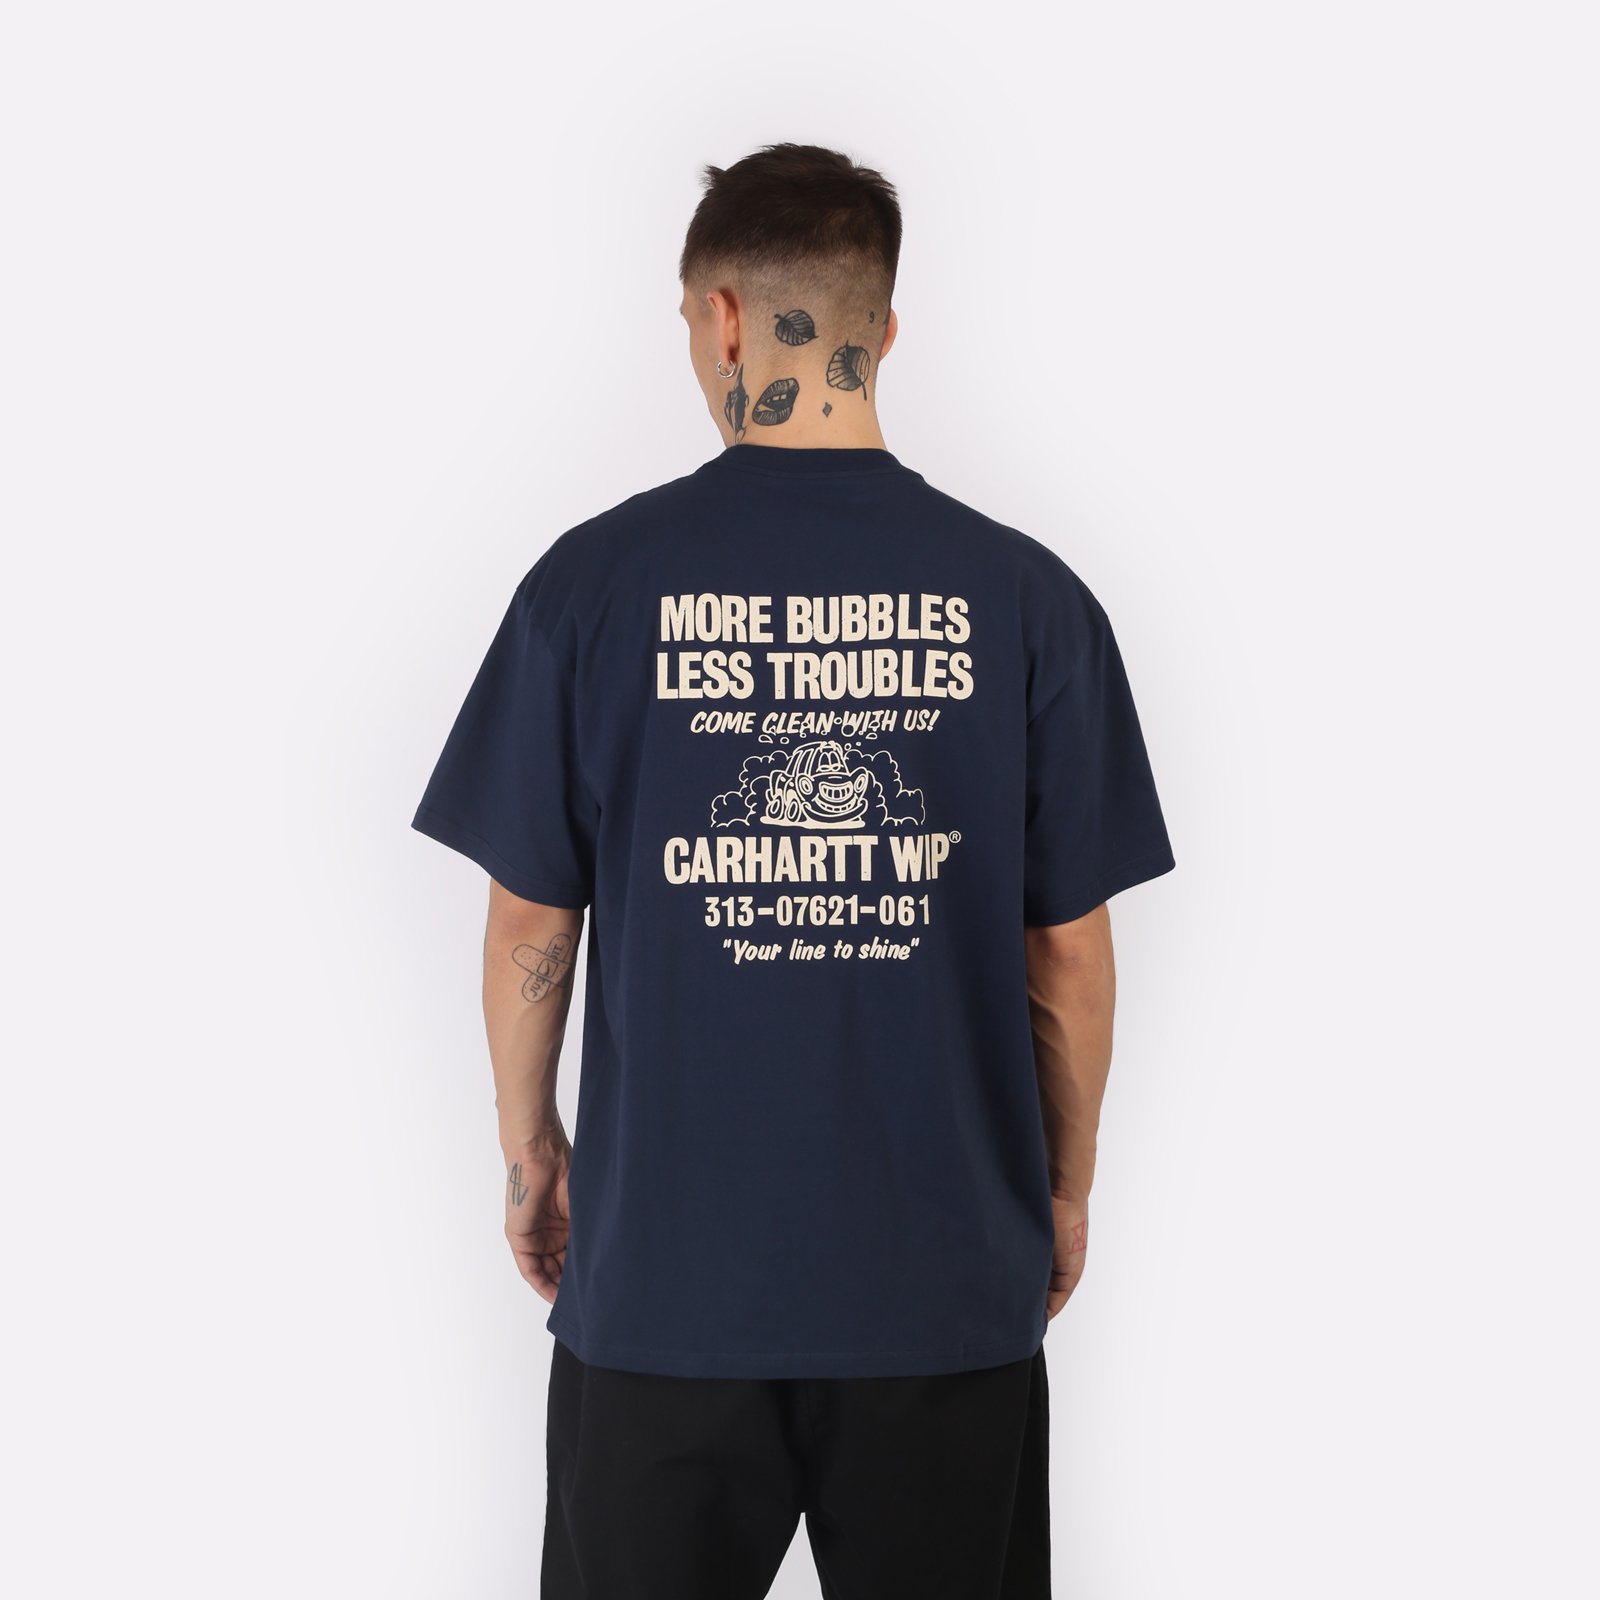 мужская синяя футболка Carhartt WIP S/S Less Troubles T-Shirt I033187-blue/wax - цена, описание, фото 2